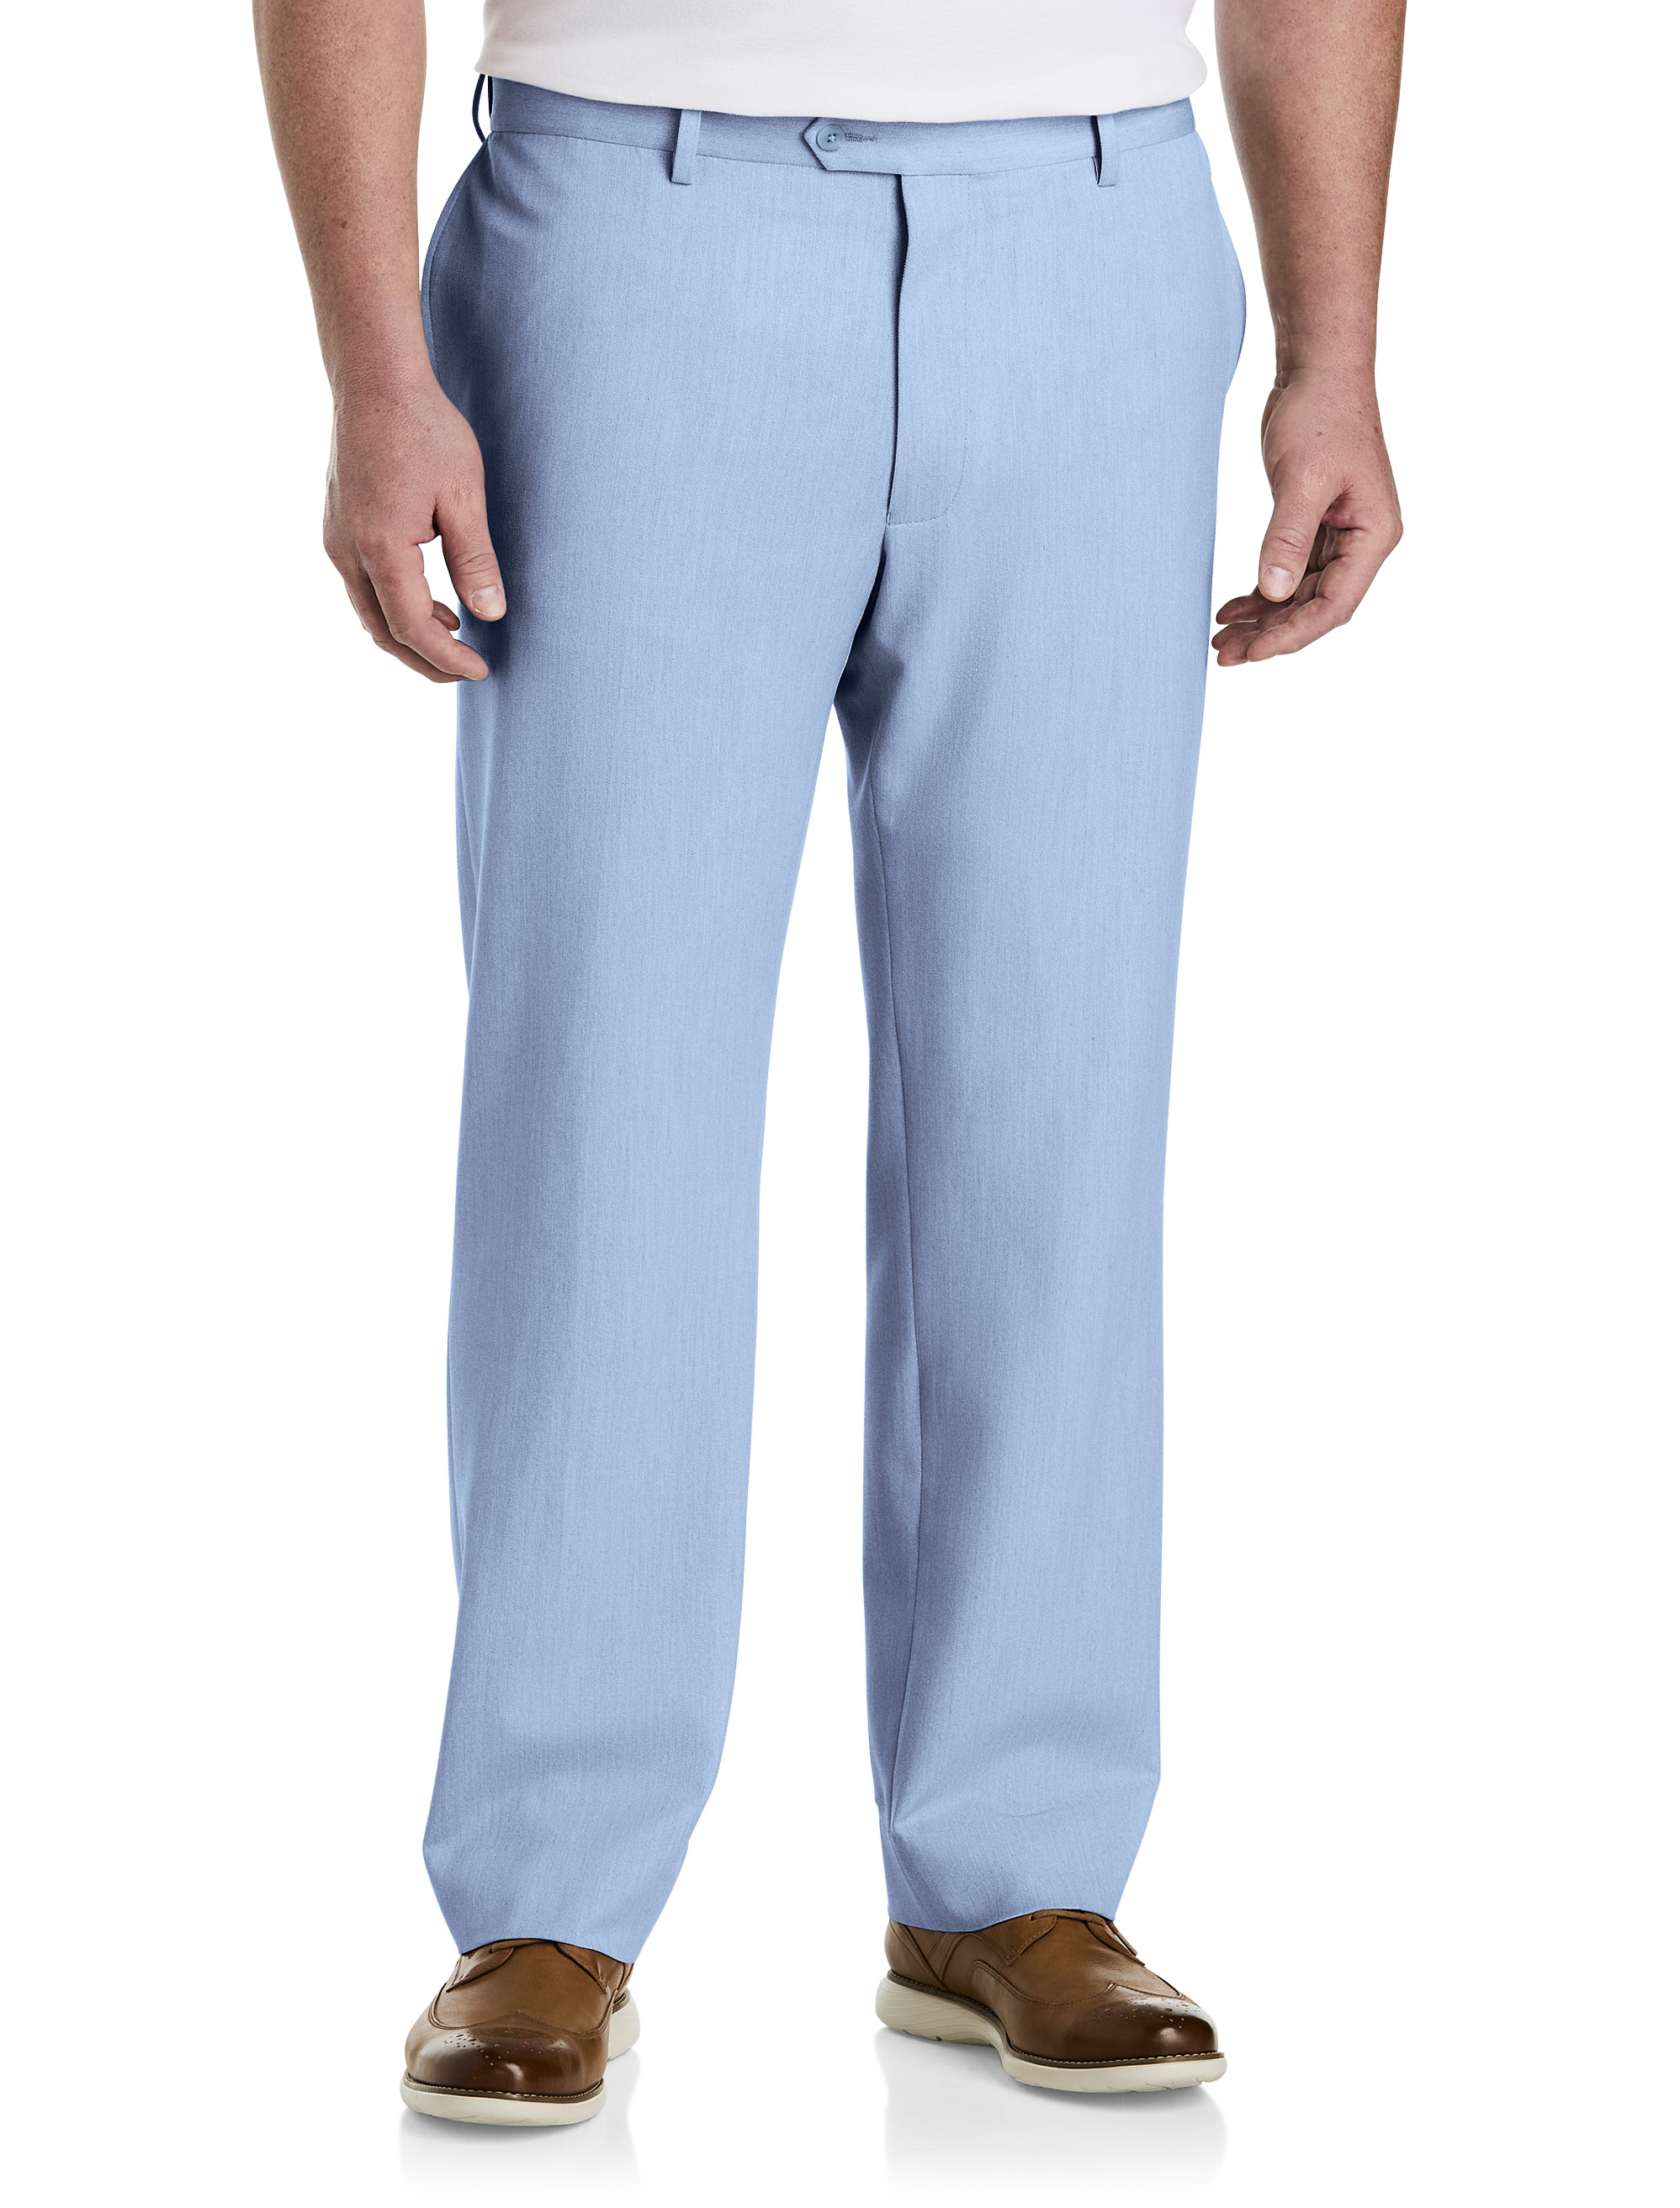 Men's Light Blue Pants